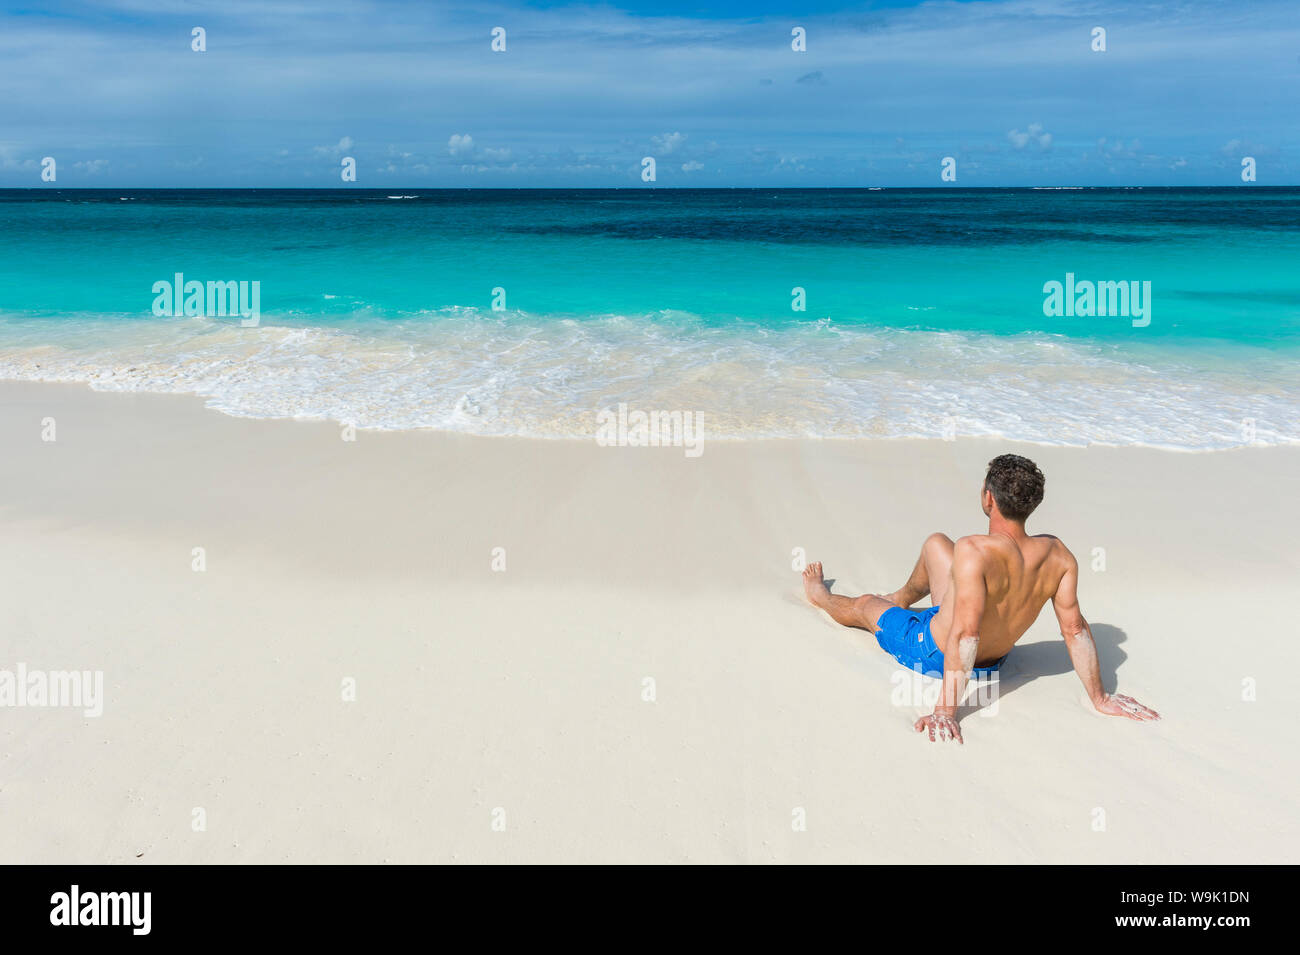 Man relaxing on the world class Shoal Bay East Beach, Anguilla, territoire britannique d'Outremer, Antilles, Caraïbes, Amérique Centrale Banque D'Images